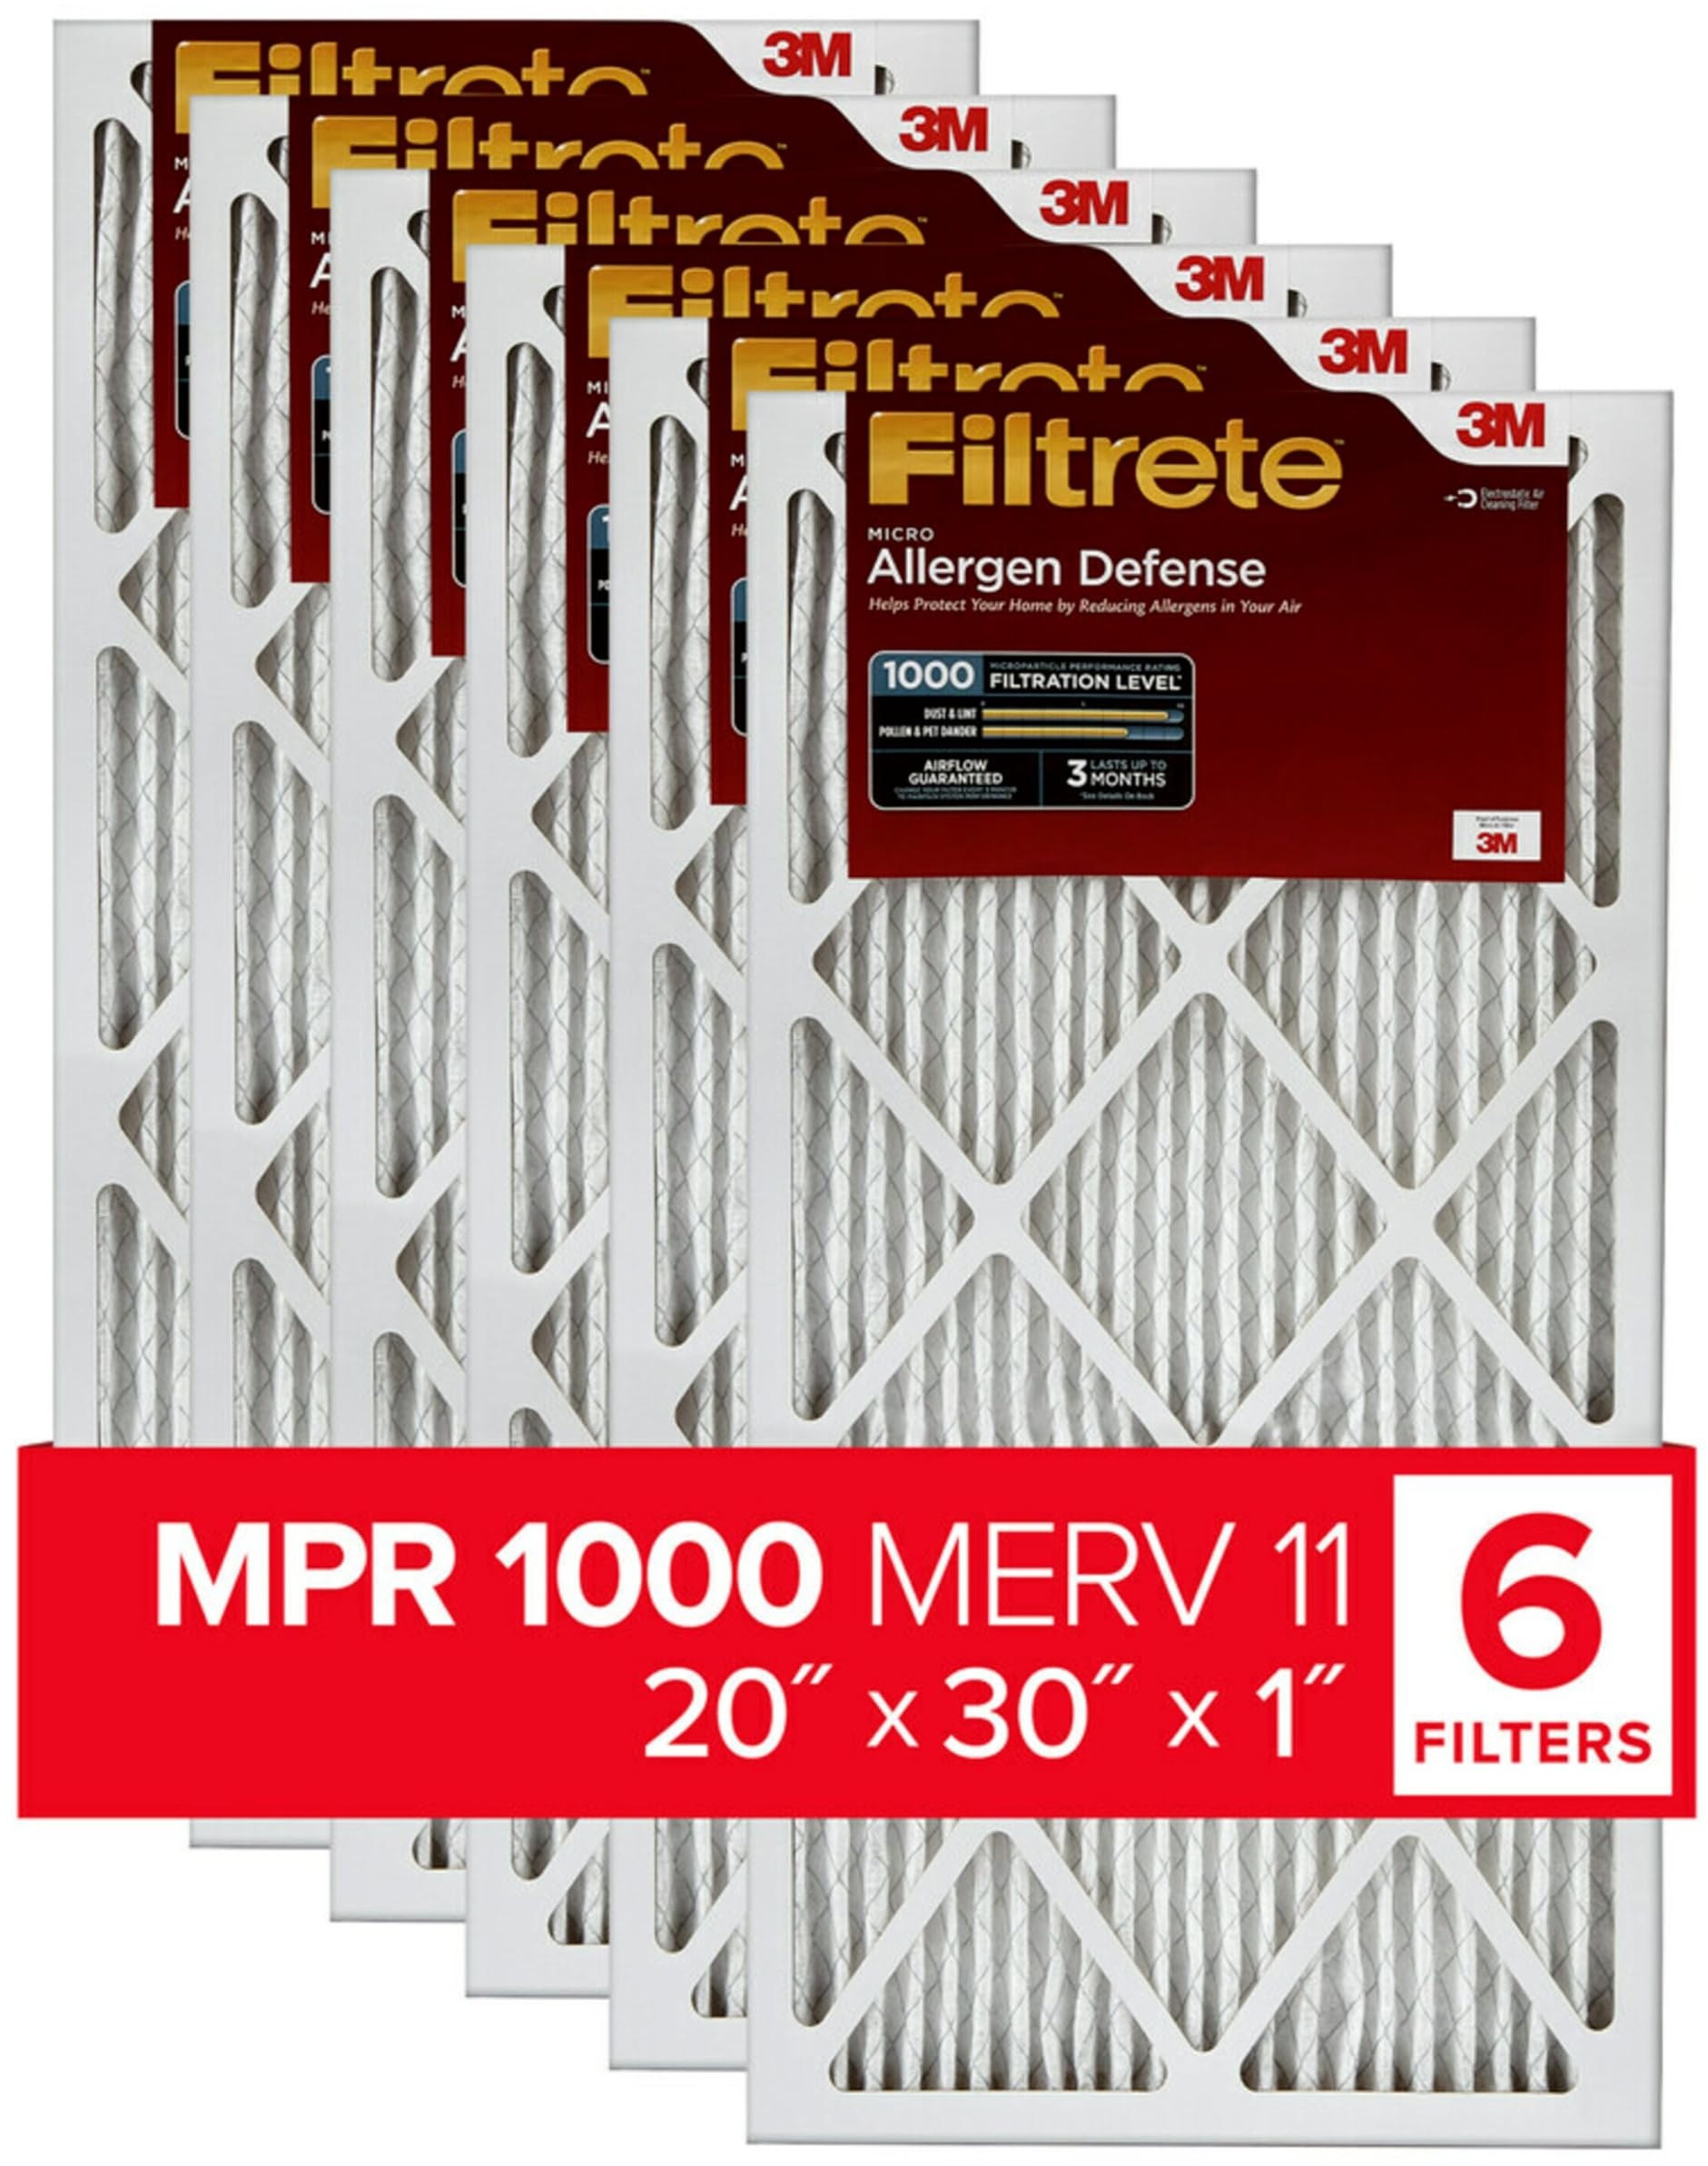 Filtrete 20 x 30 x 1 AC Ofen-Luftfilter, MERV 11, MPR 1000, Mikro-Allergenabwehr, 3 Monate plissiert, 2,5 cm elektrostatischer Luftreinigungsfilter, 6 Stück (tatsächliche Größe 50,3 x 75,7 x 2,1 cm)